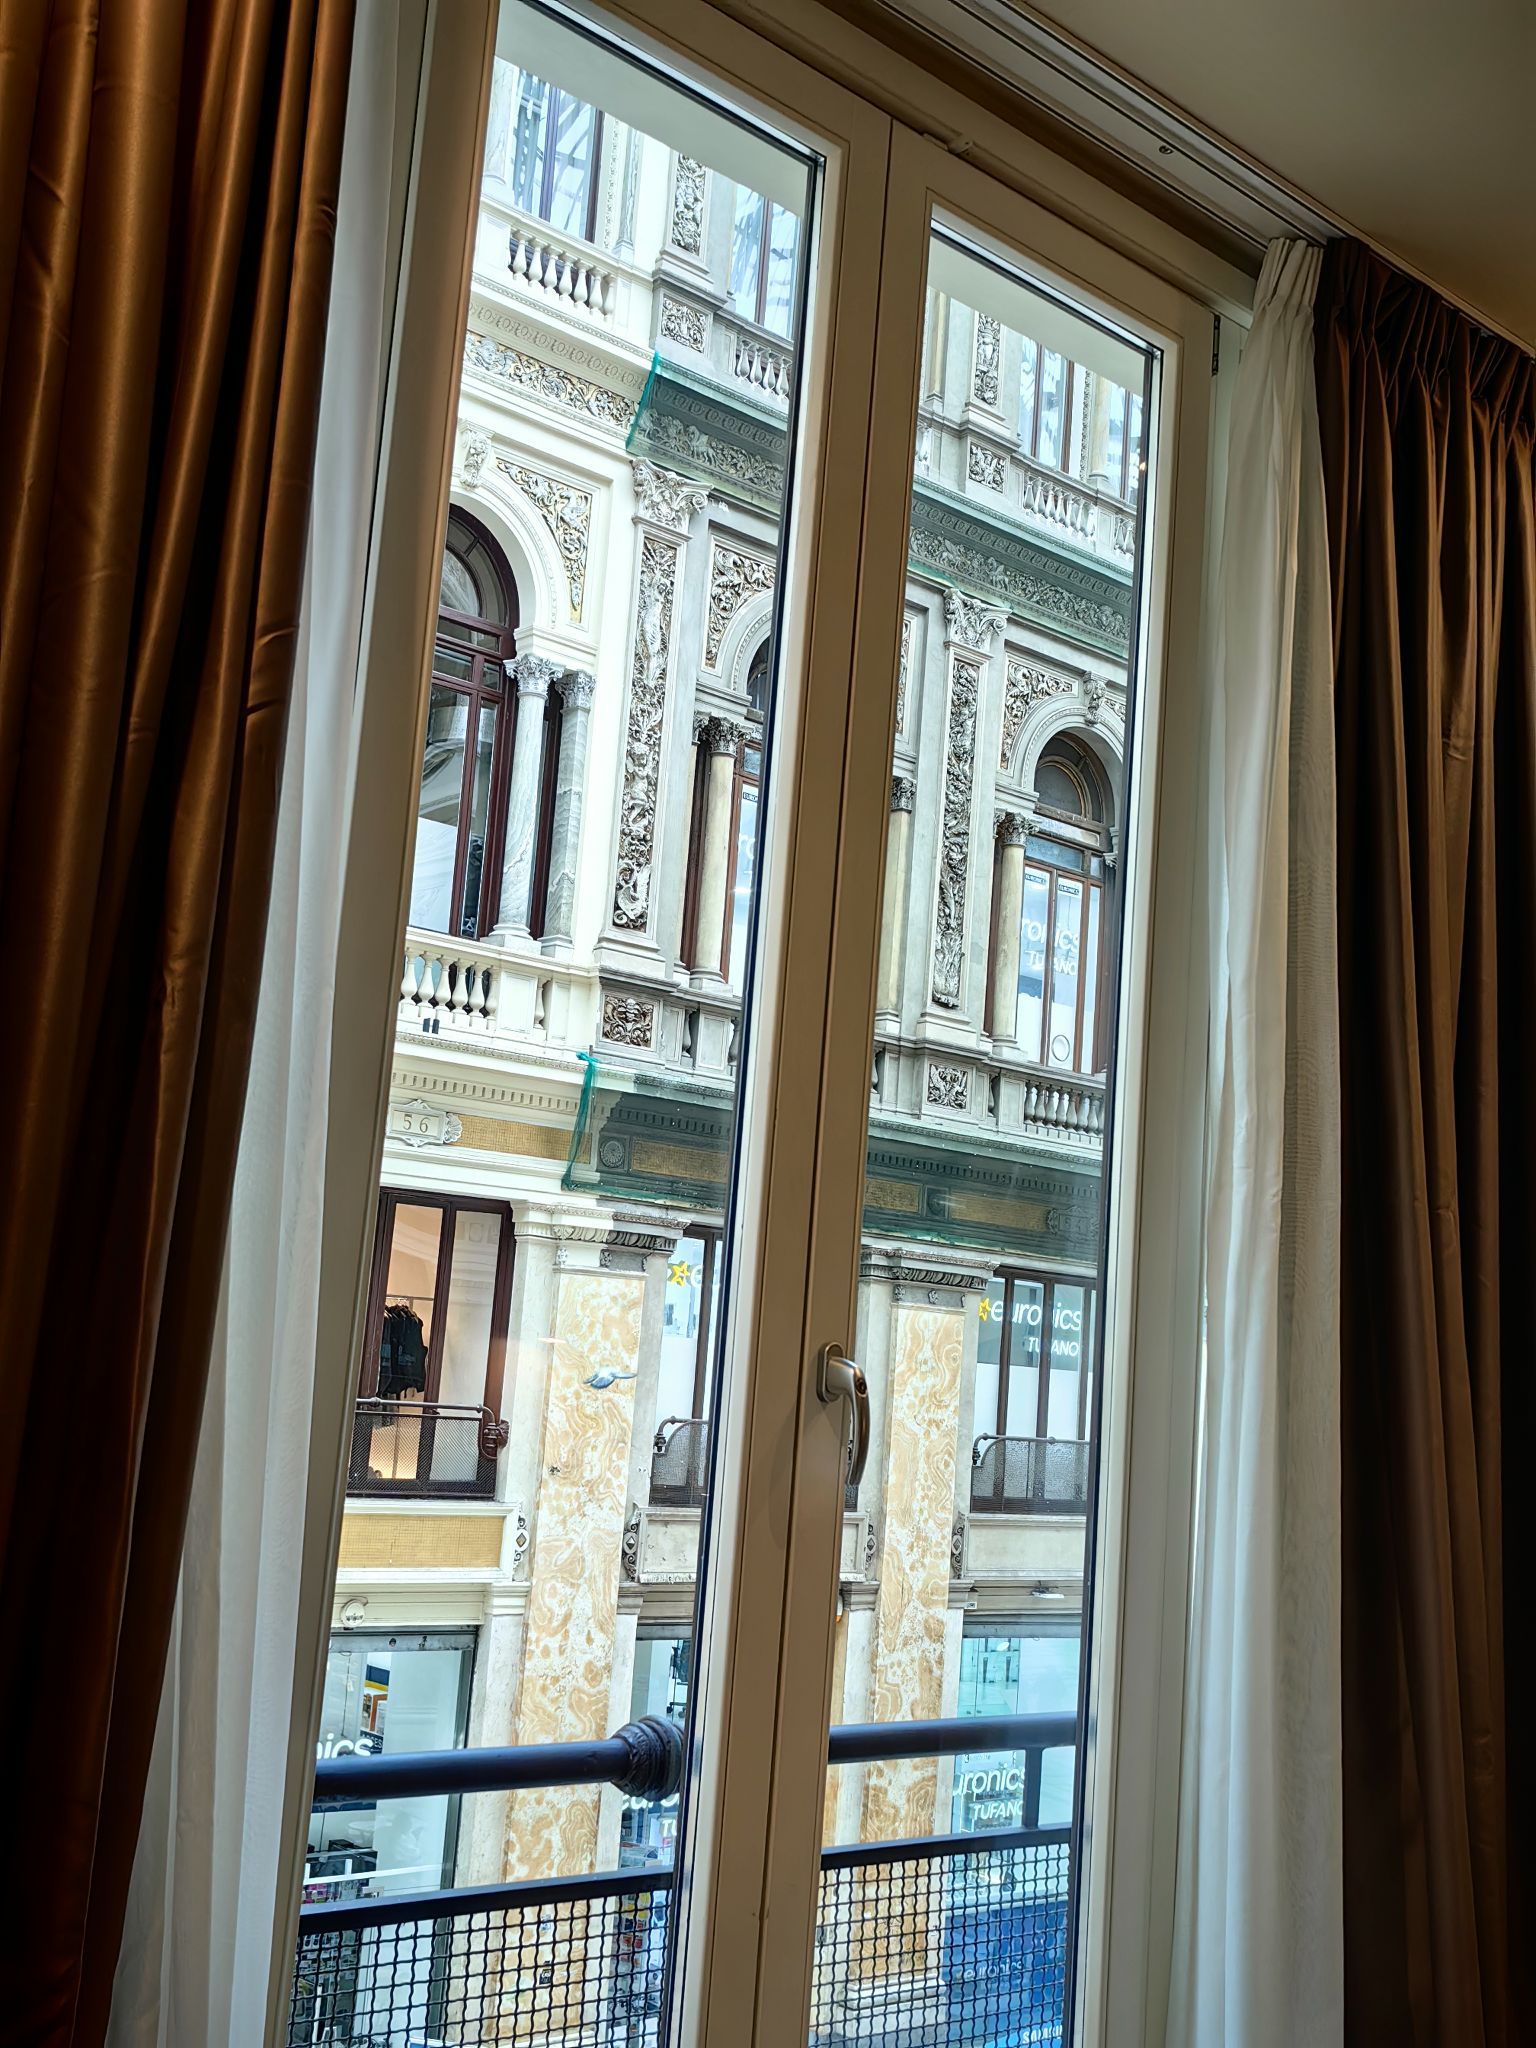 酒店位于市中心，翁贝托一世长廊内部，站在窗前就能看到楼下的人群，玻璃很隔音，唯一确定就是房间面积不大